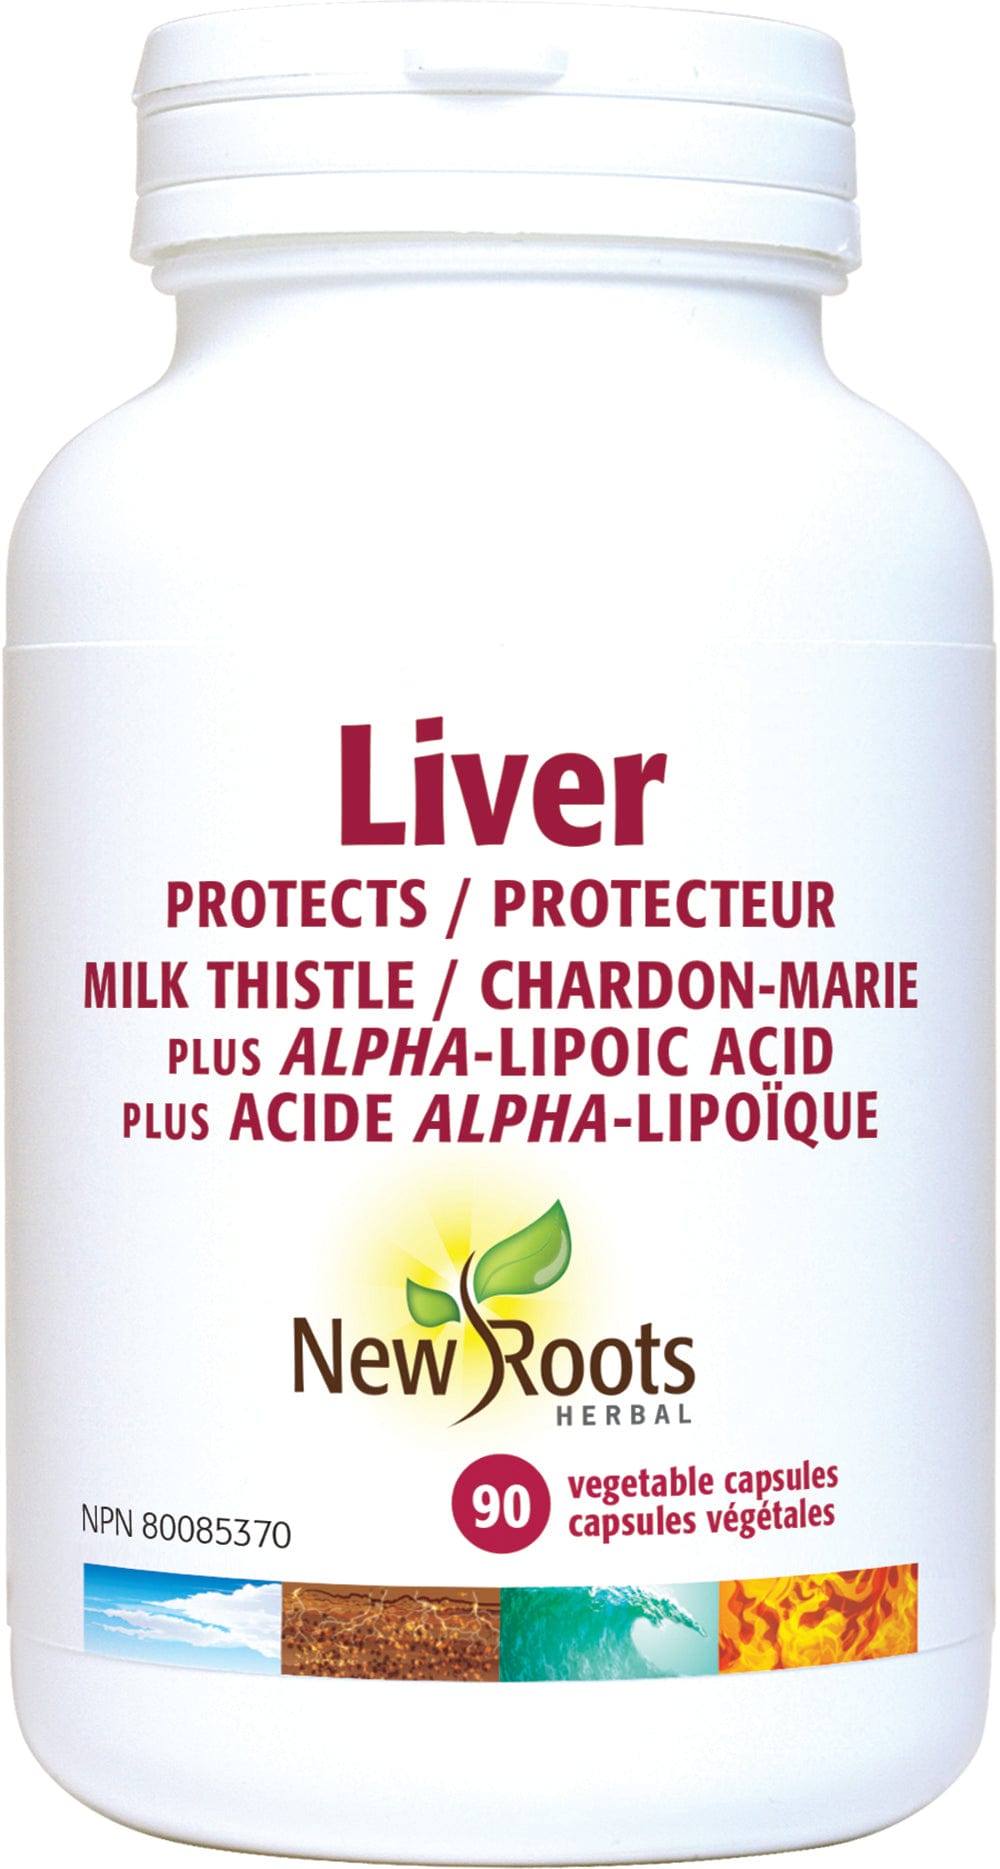 NEW ROOTS HERBAL Suppléments Liver (chardon-marie) / Protection du foie 90caps